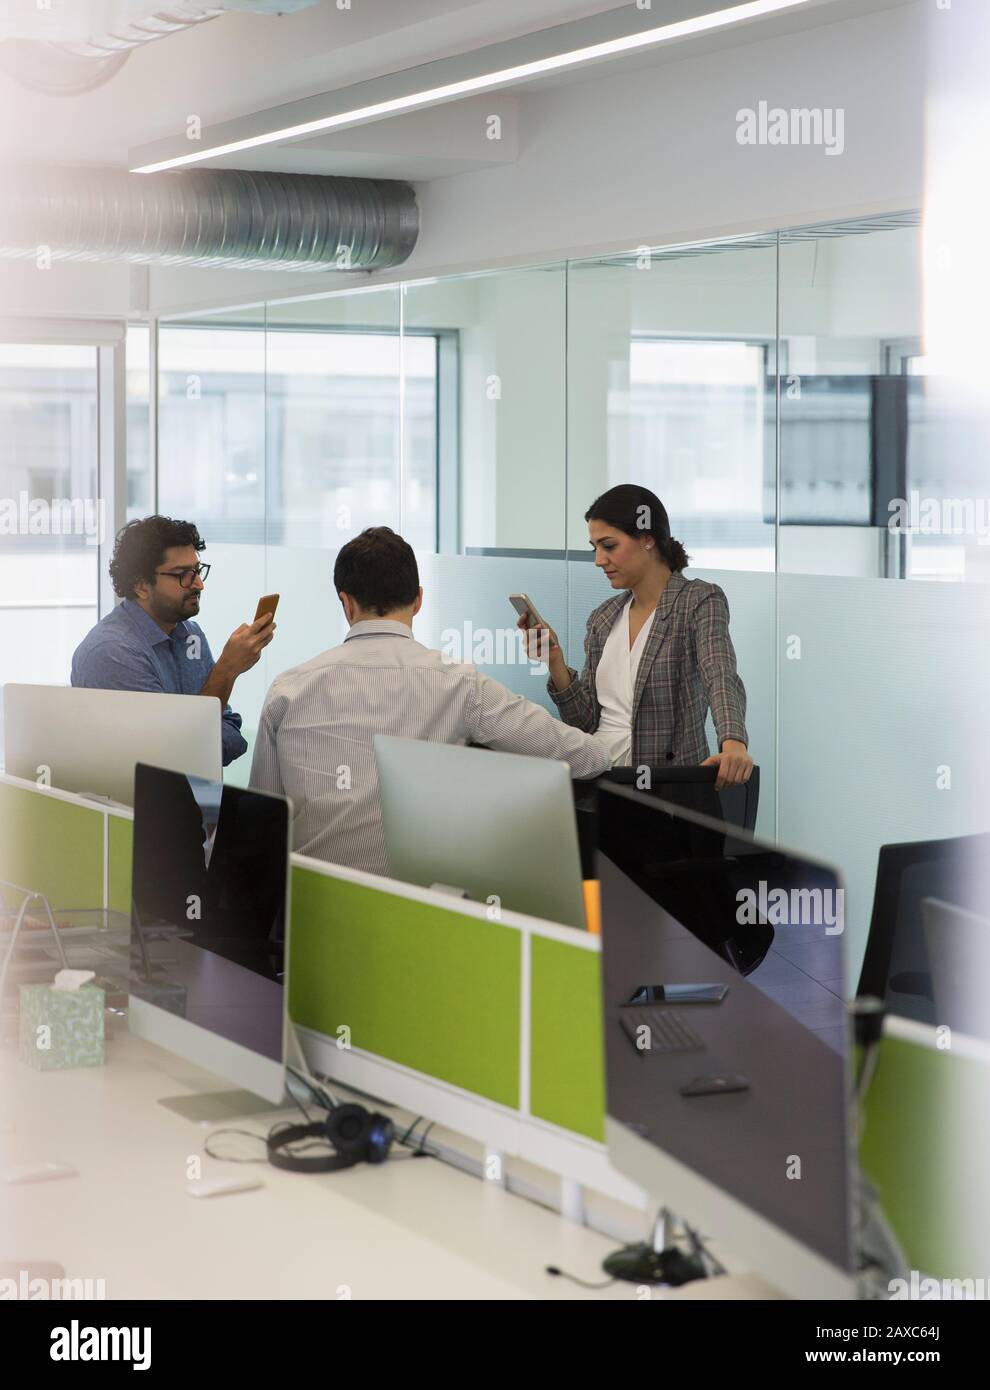 Les gens d'affaires avec smartphones se rencontrent dans un bureau en plan ouvert Banque D'Images